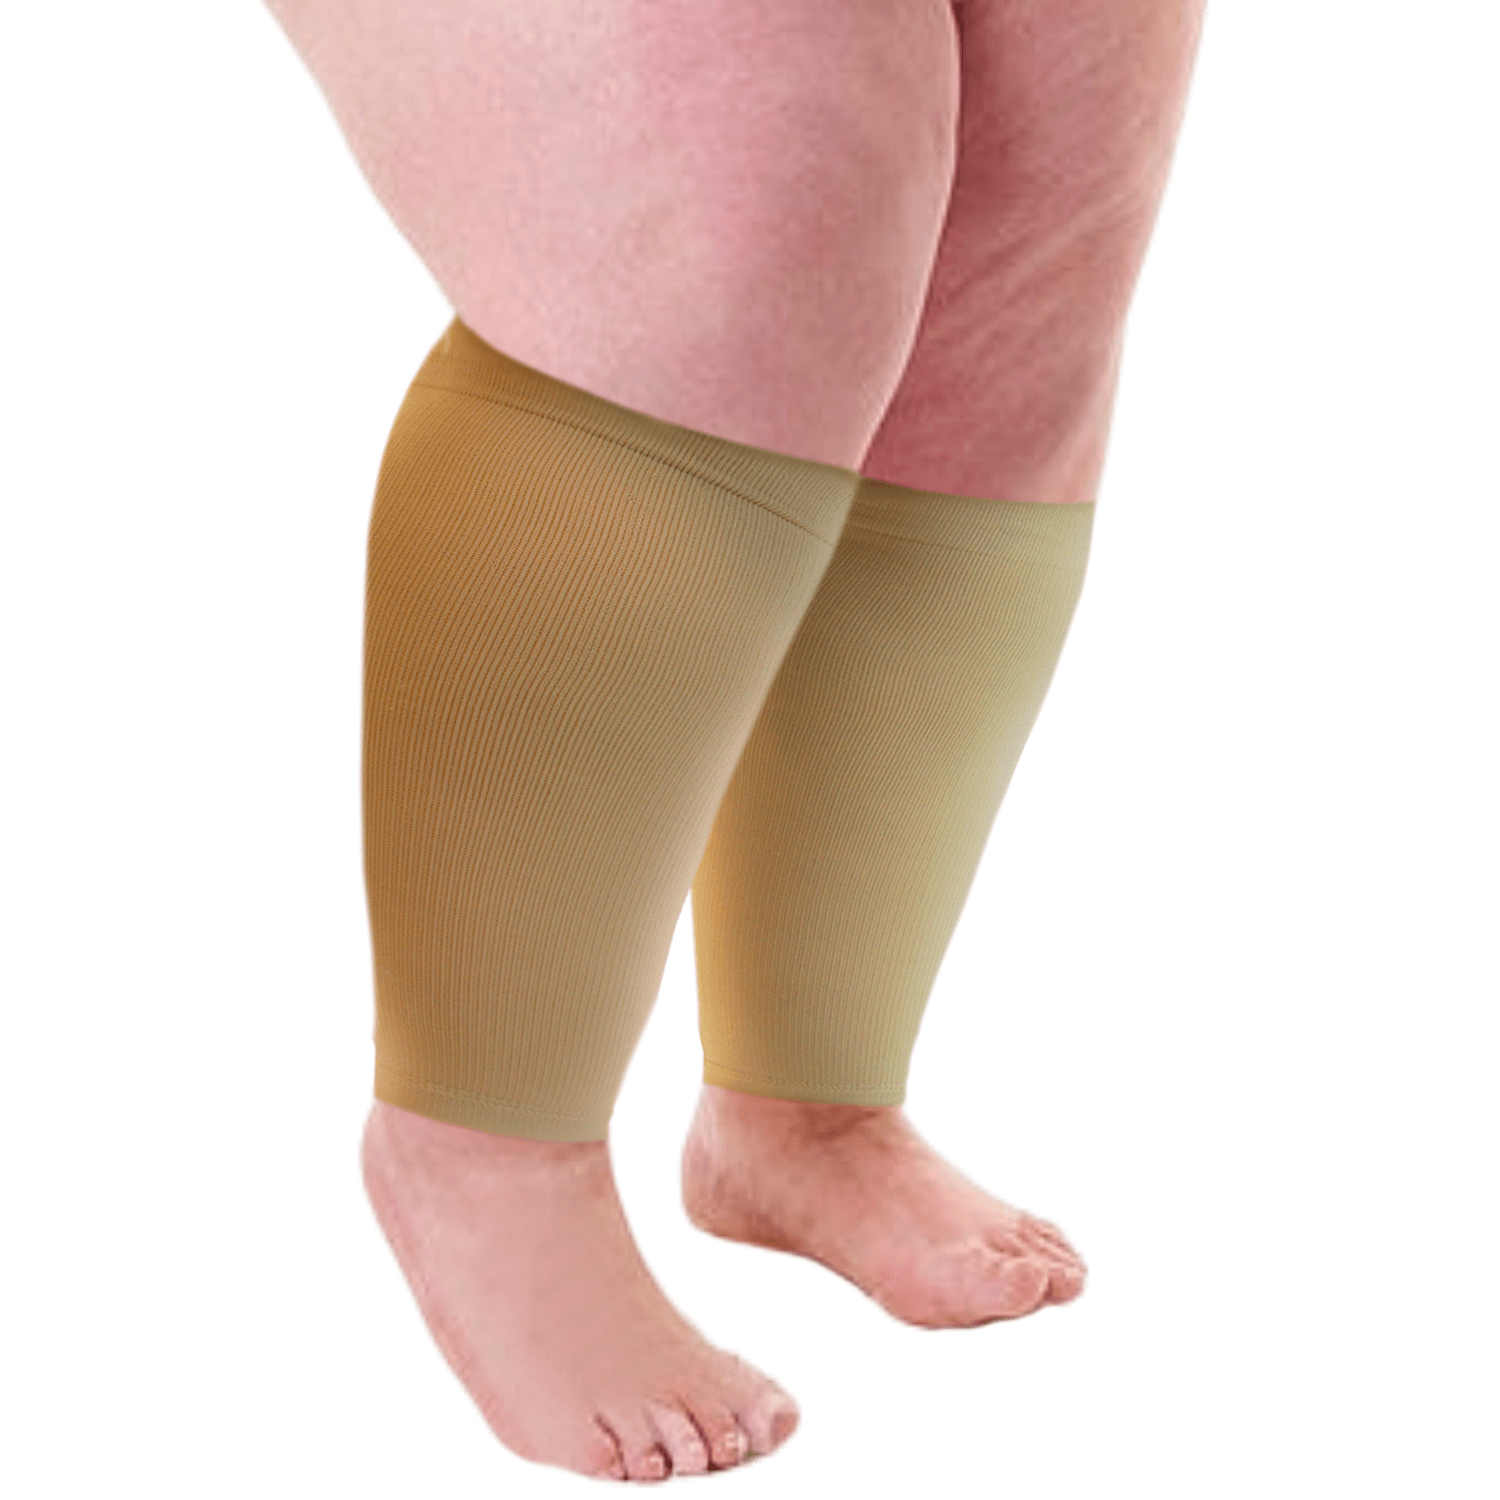  MGANG Calf Compression Sleeve, (2 Pairs) 20-30mmHg Leg